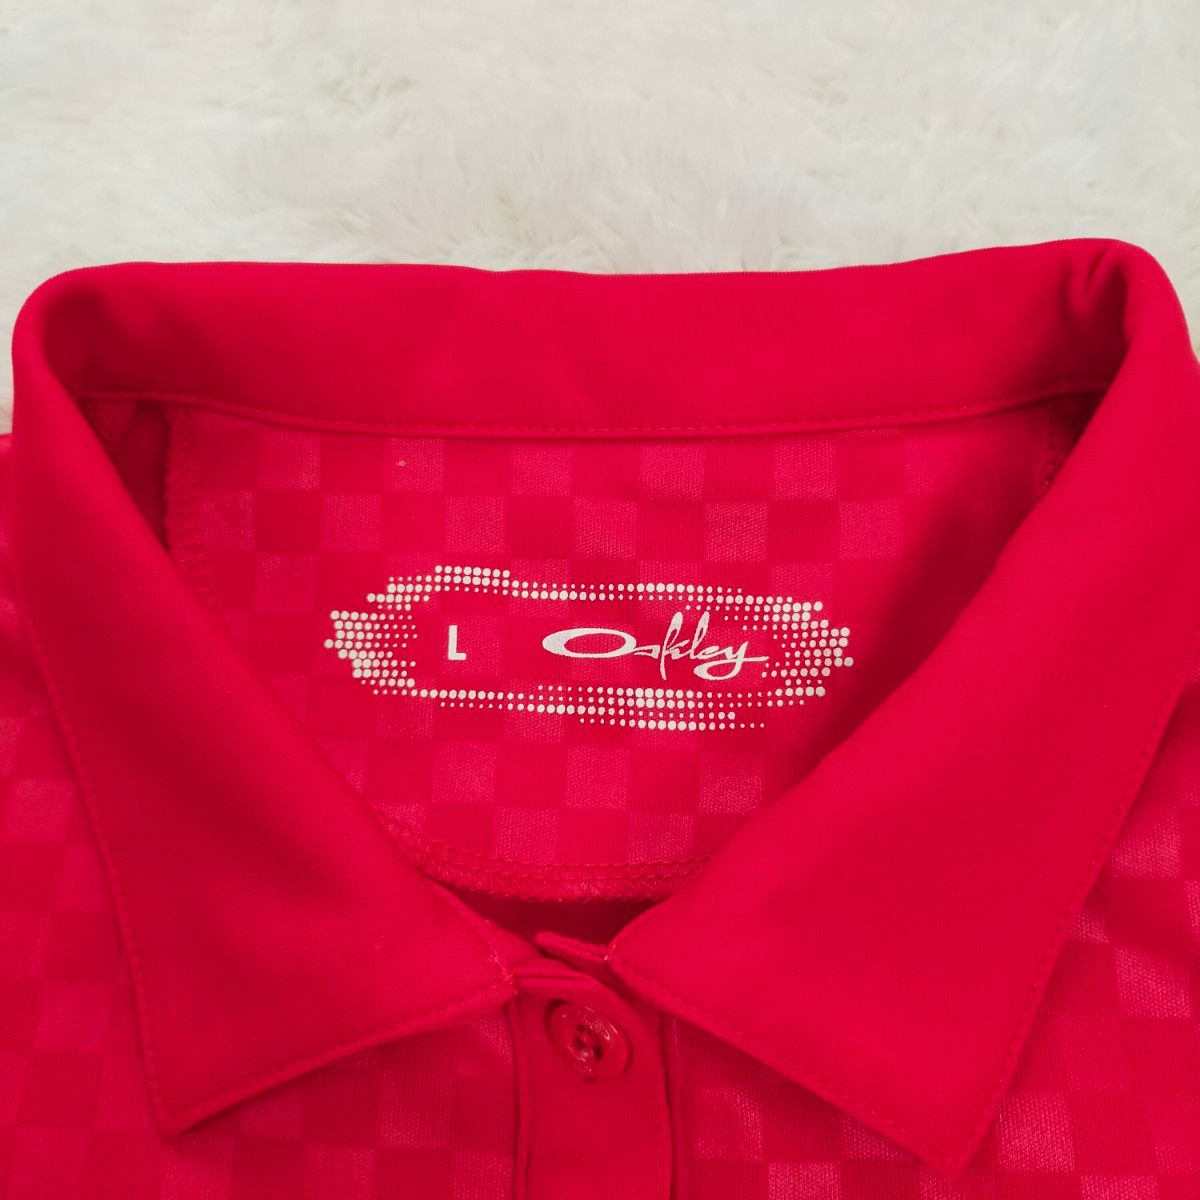 OAKLEY オークリー ゴルフ テニス 半袖 ポロシャツ  赤色 吸汗速乾ドライ ストレッチ レディース Lサイズ